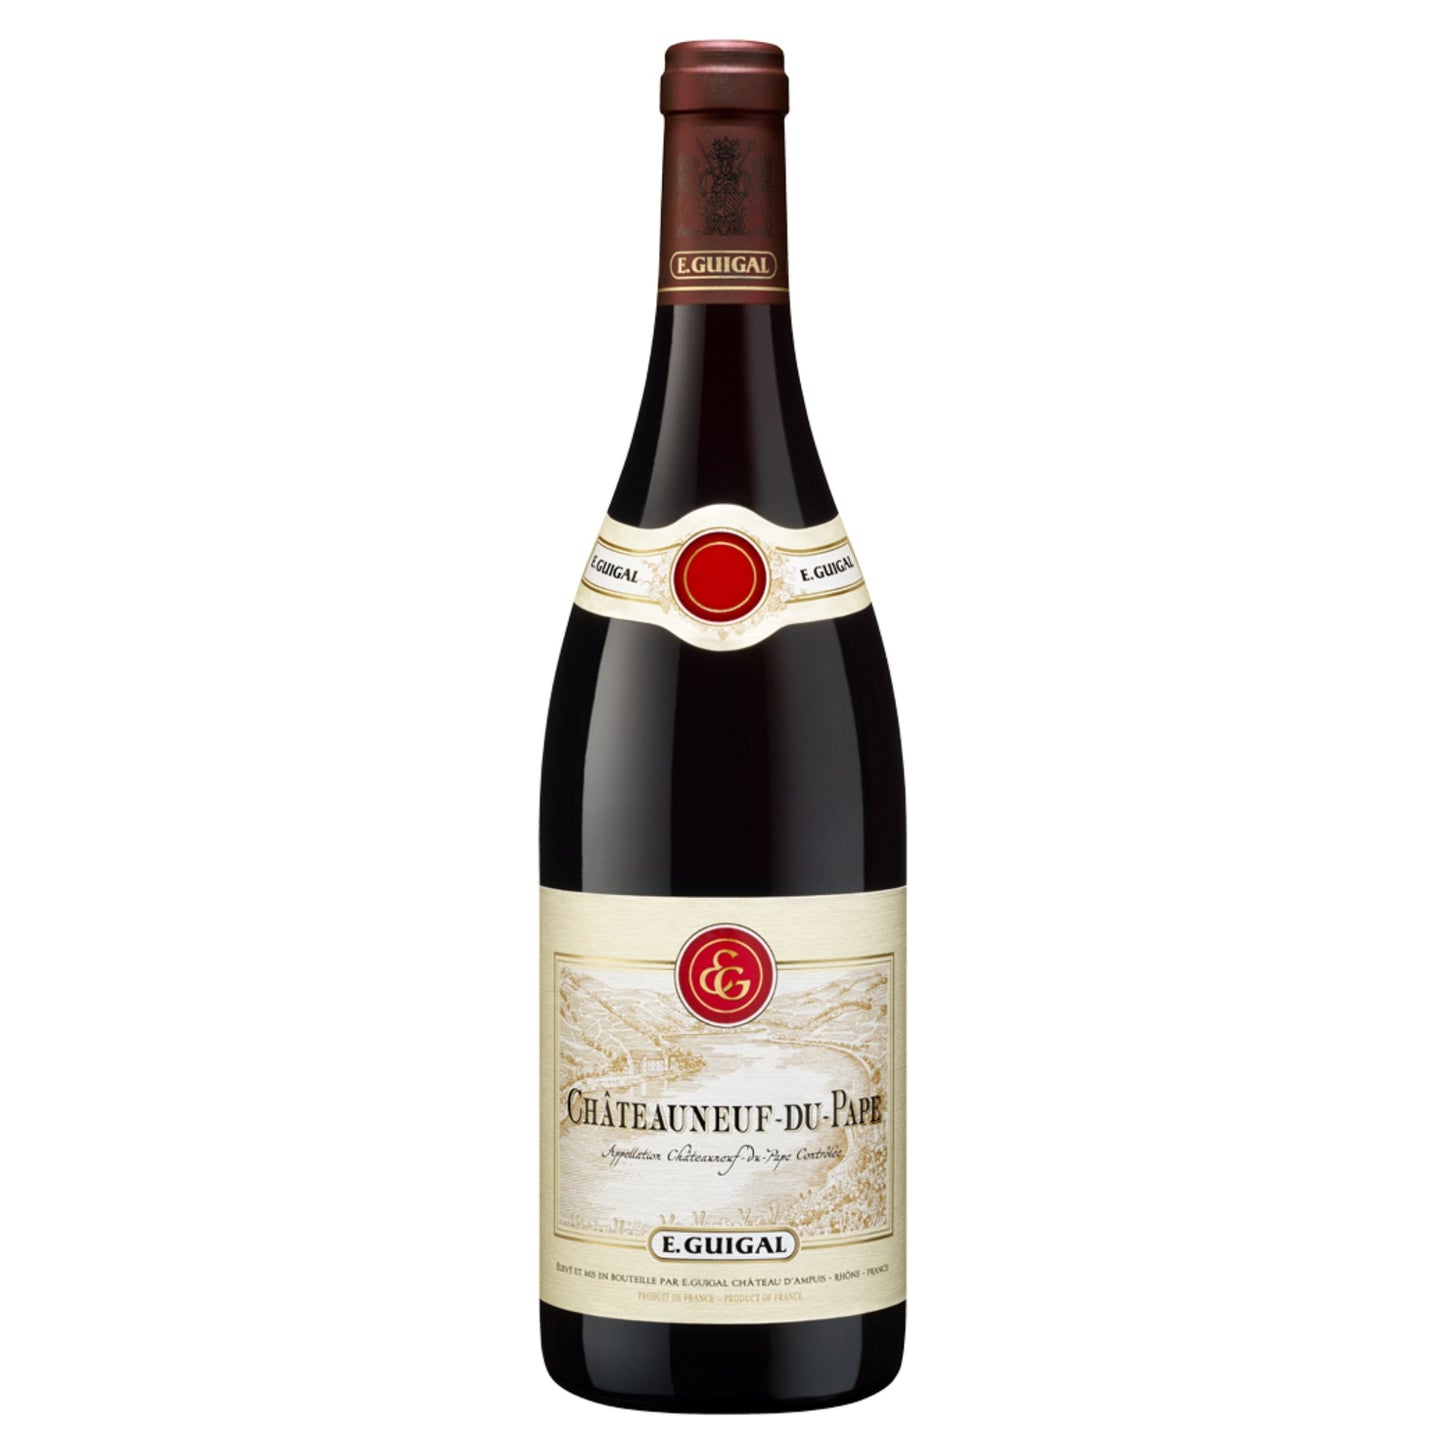 E. Guigal Chateauneuf du Pape - Grand Vin Pte Ltd